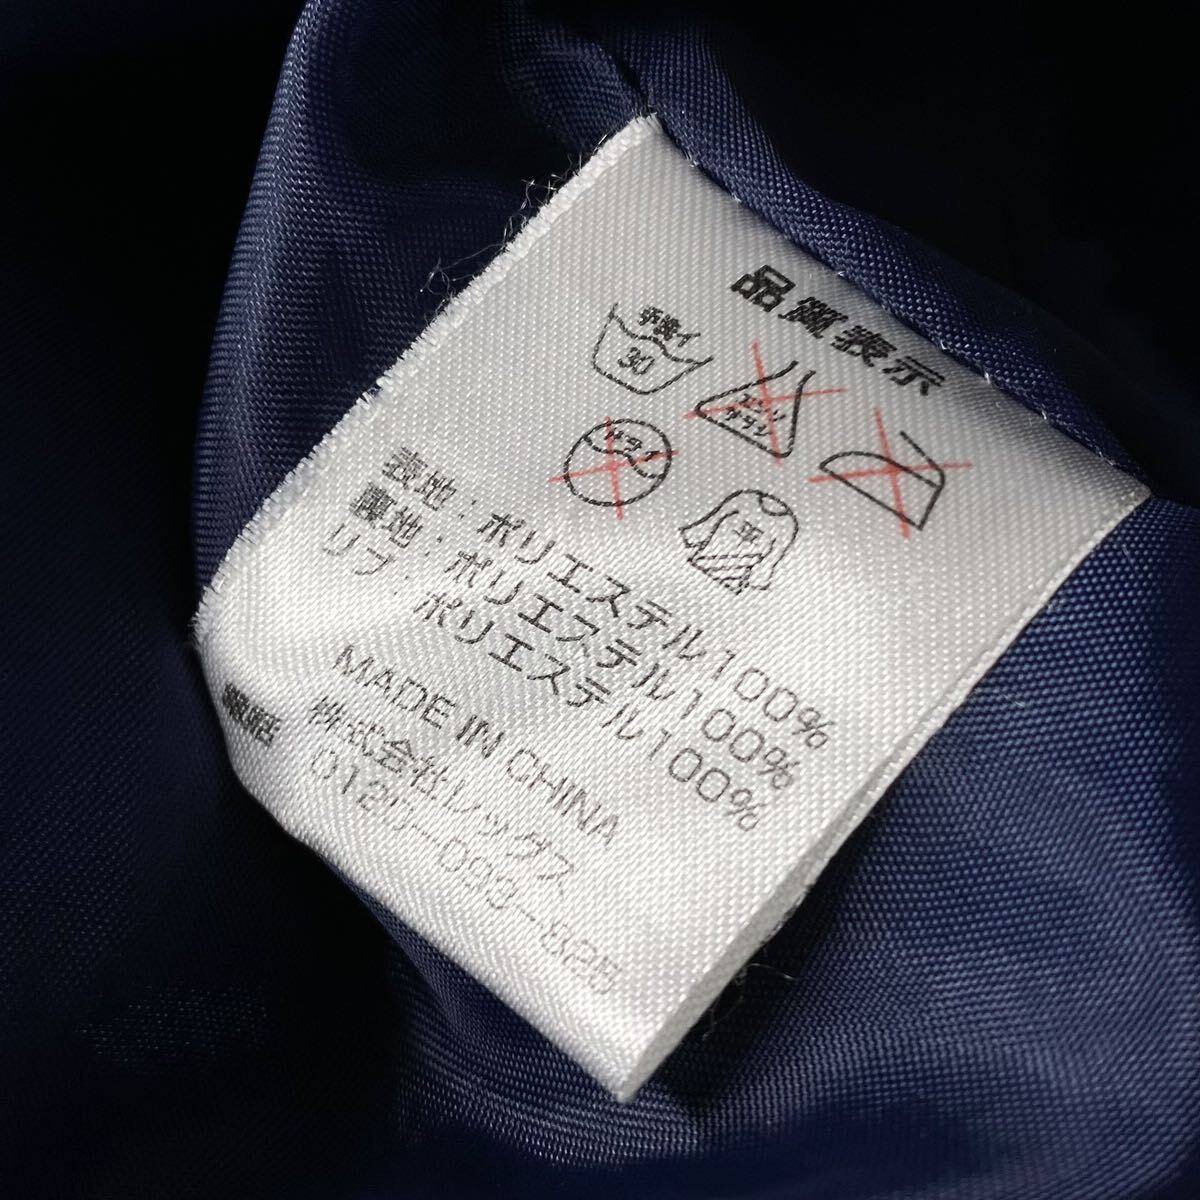  矢沢永吉/PREMIUM MALT'S スカジャン メンズL相当 ネイビー シャンパンゴールド系 背面刺繍ロゴ YAZAWA 中綿無し サテンジャケットの画像2